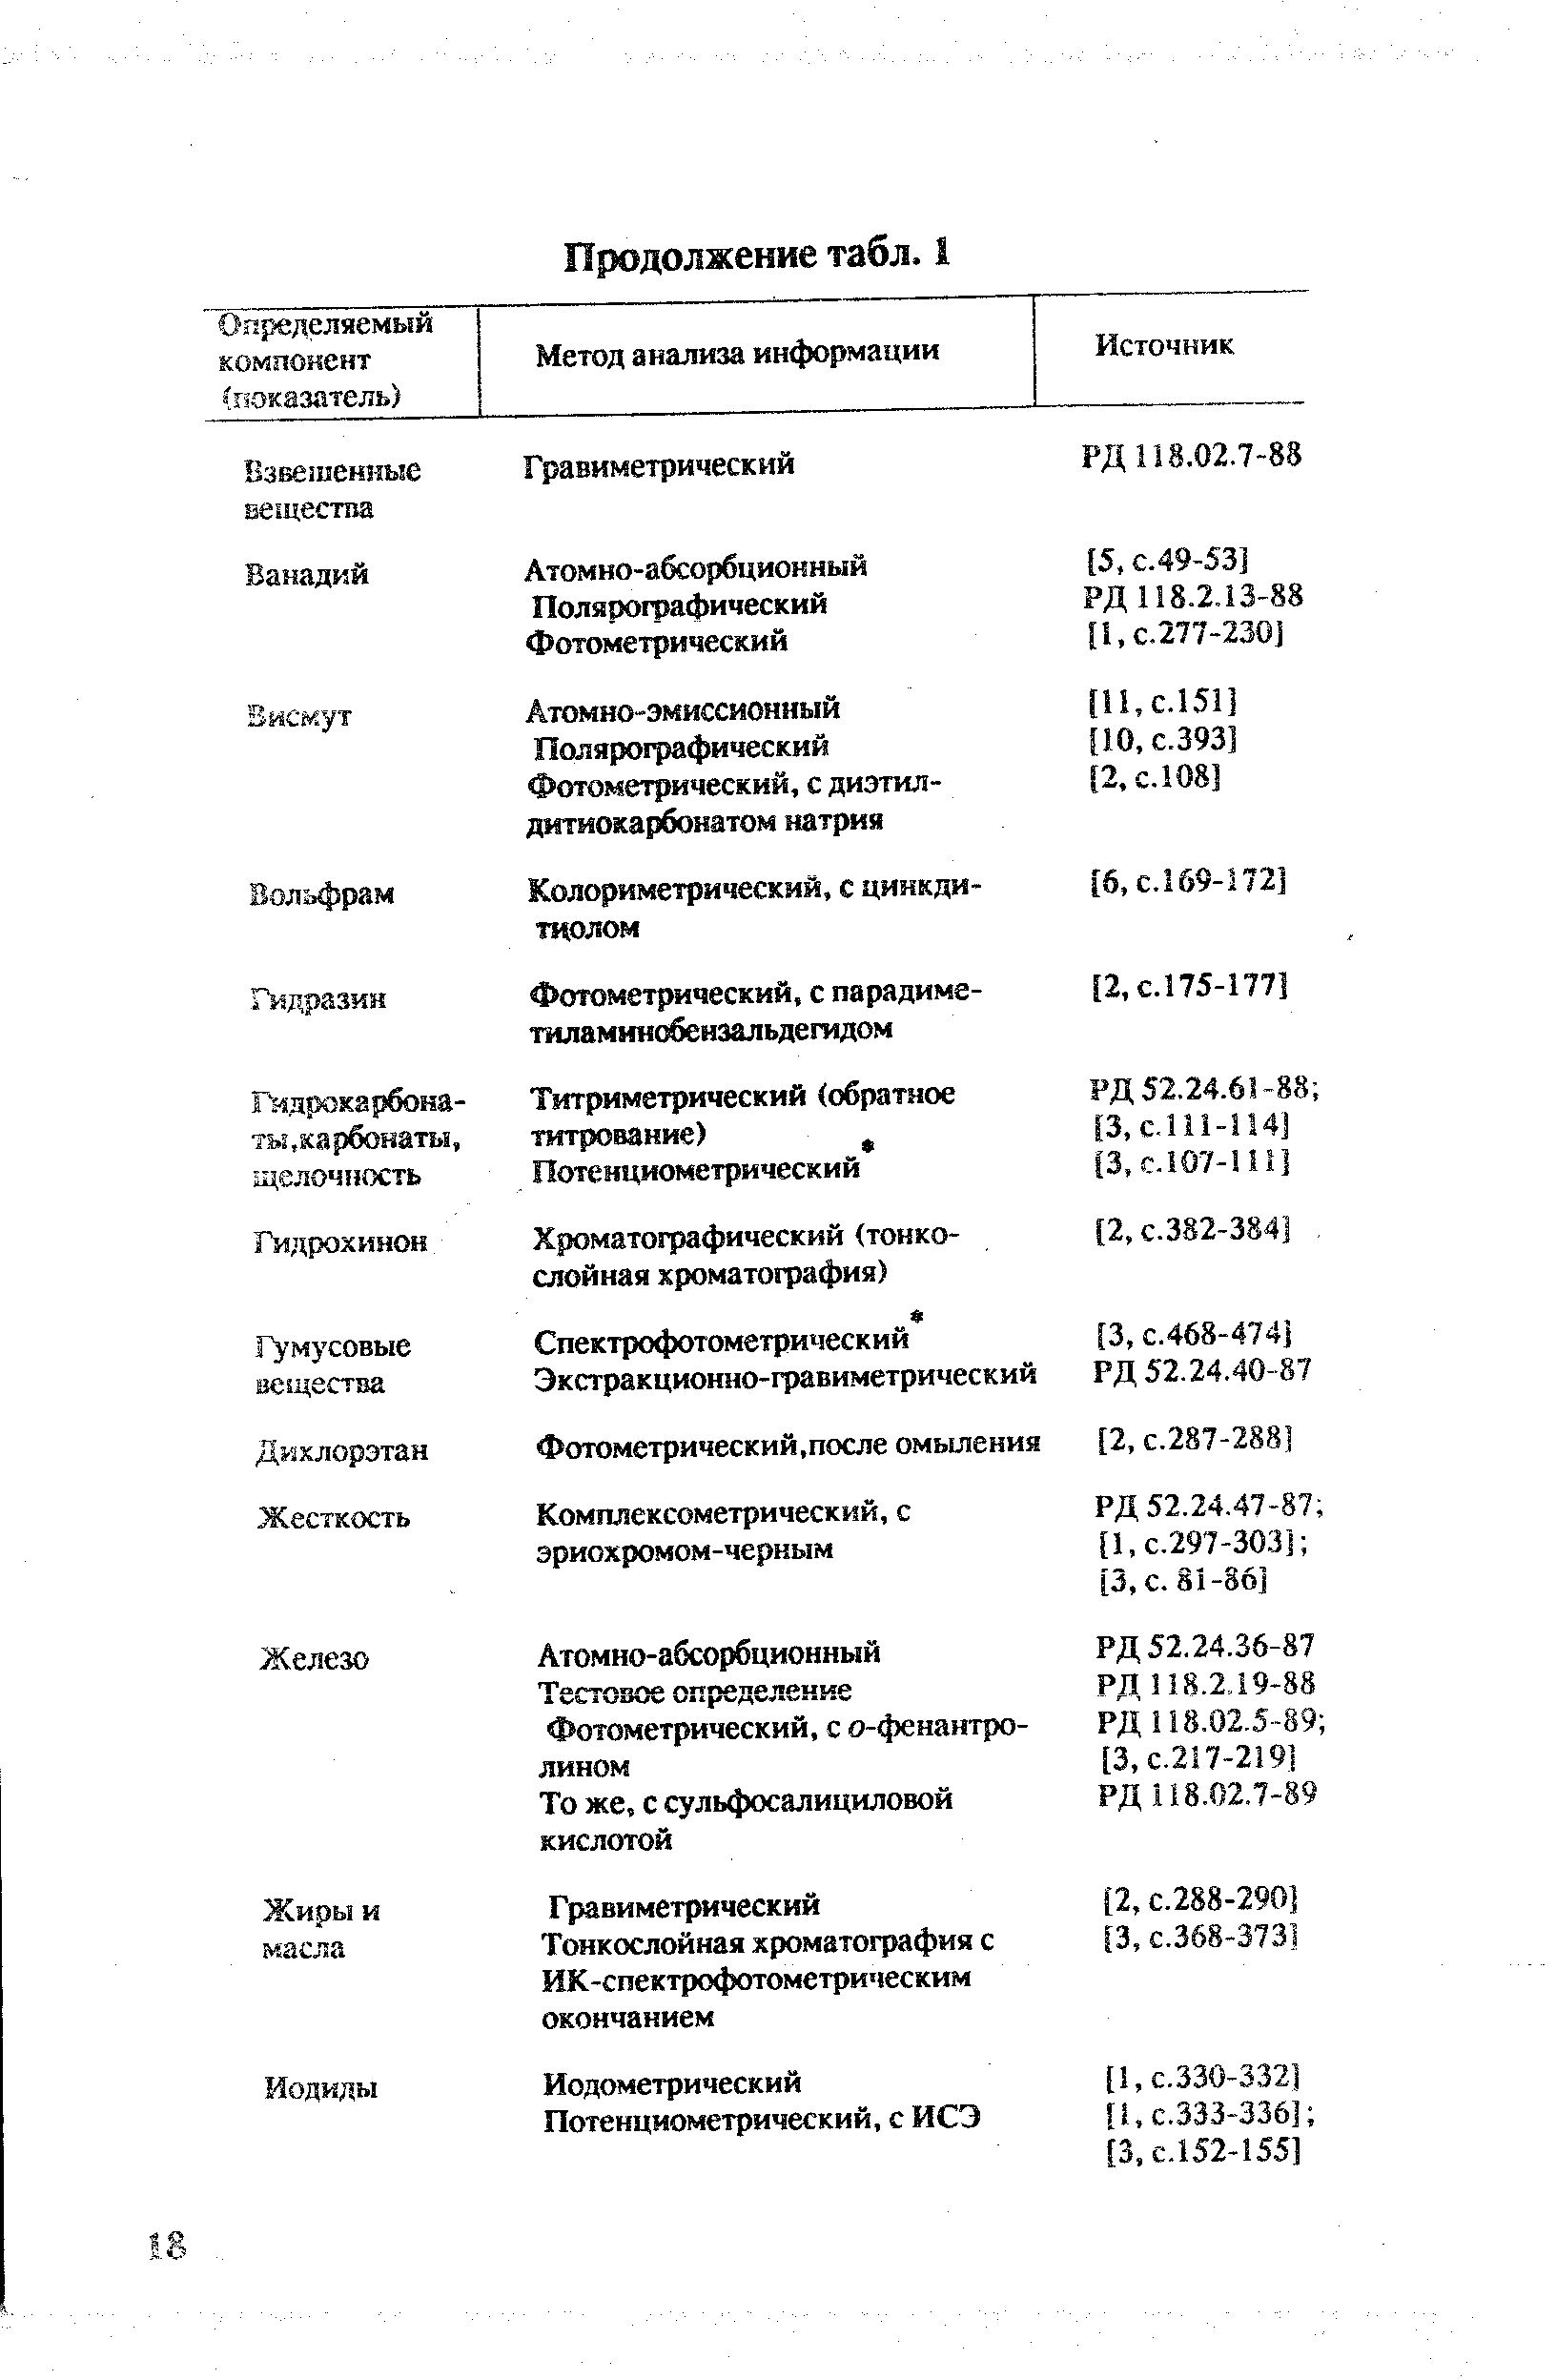 Гидрохинон Хроматографический (тонкослойная хроматография) [2, с.382-384). 